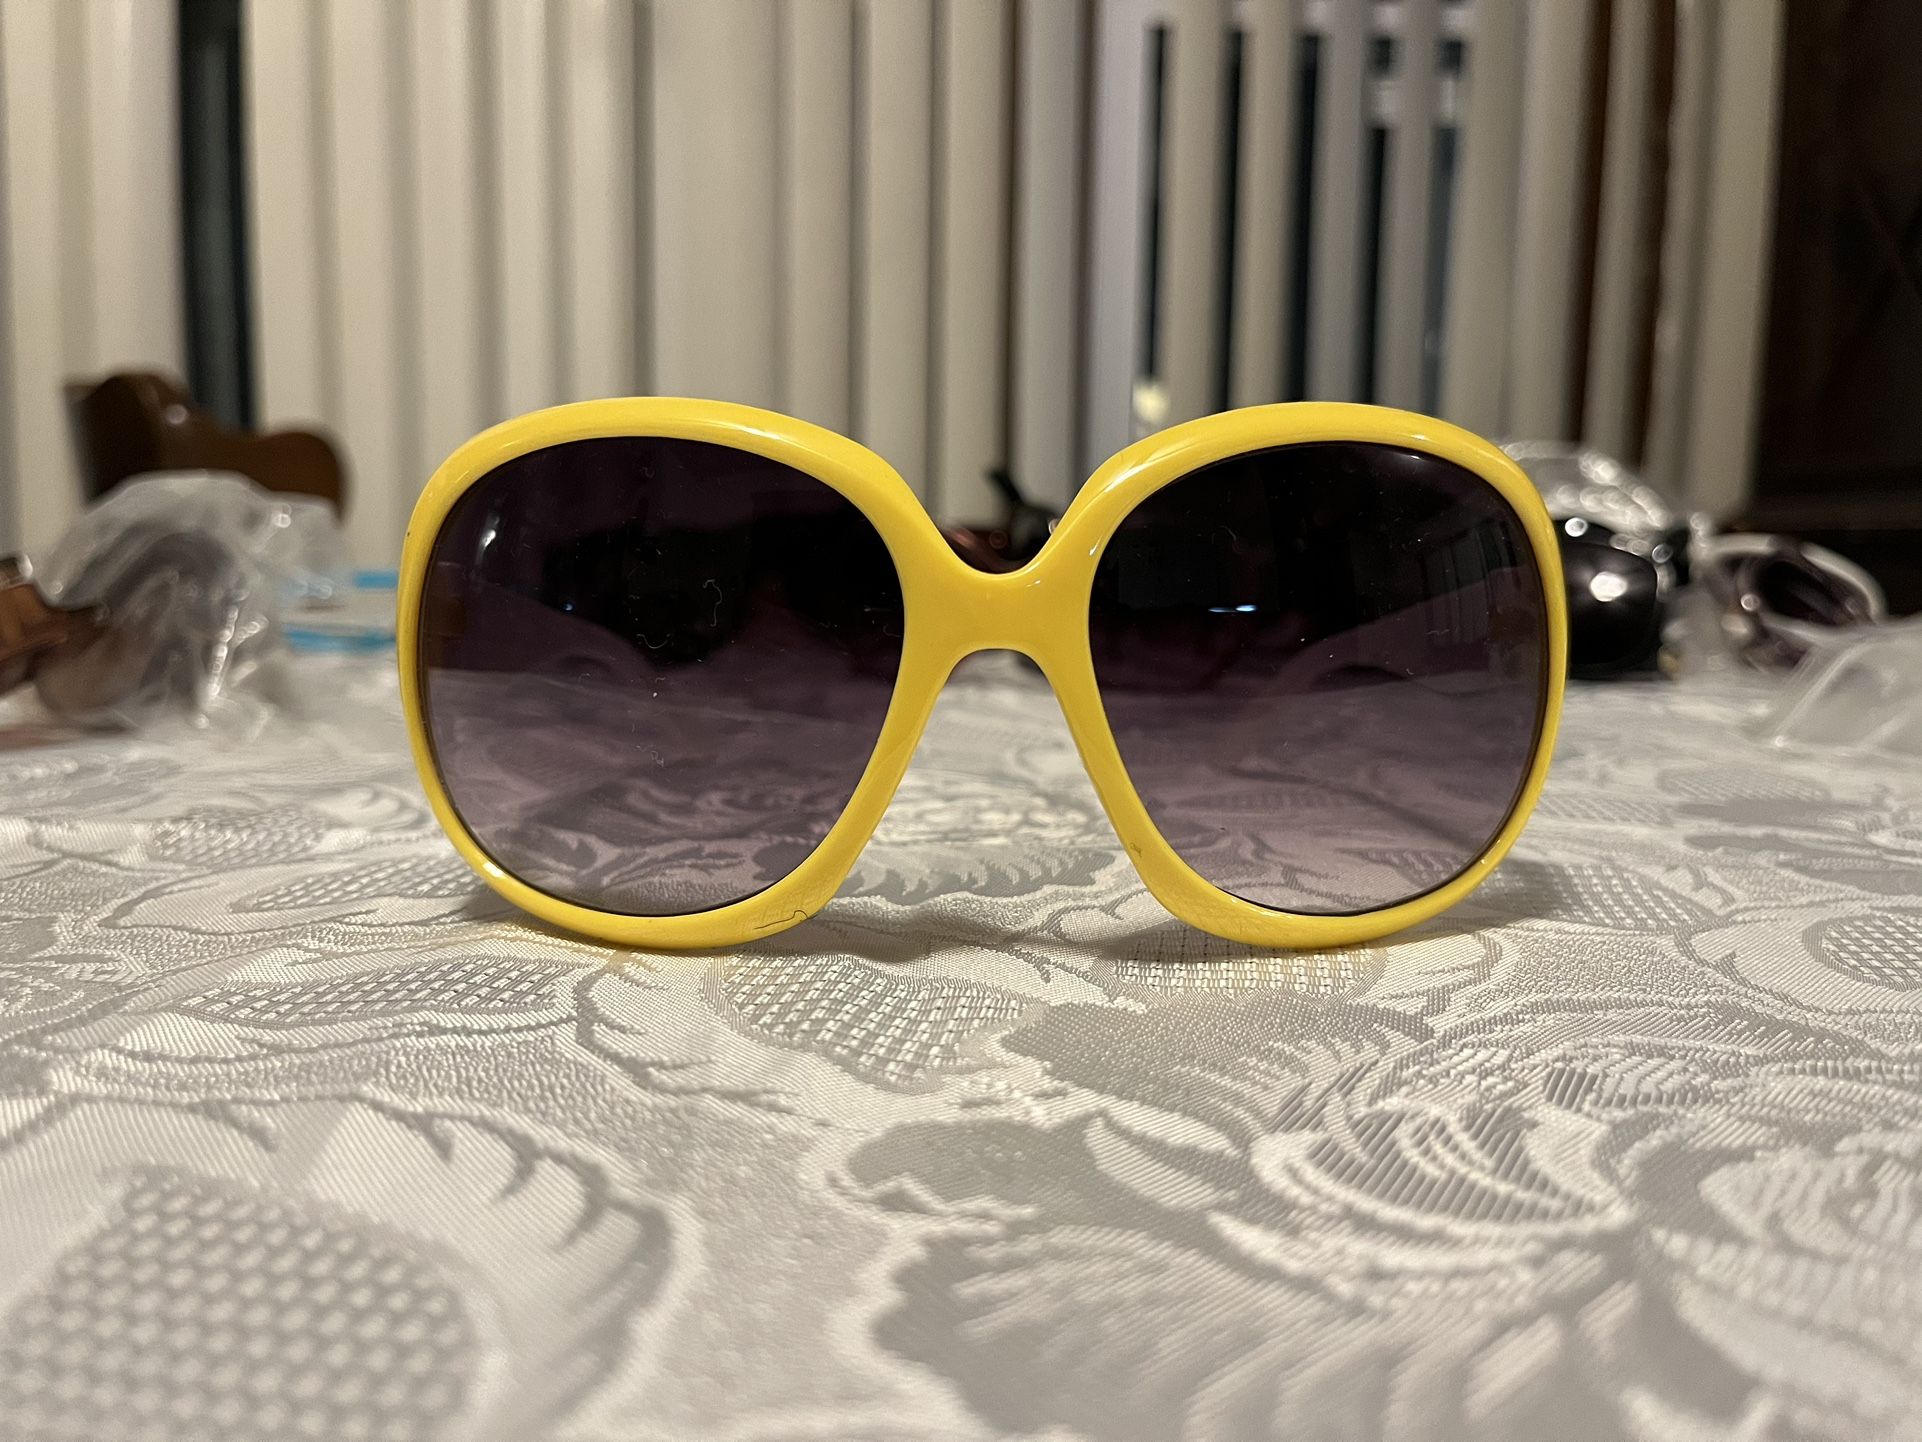 $5 Women’s Sunglasses 